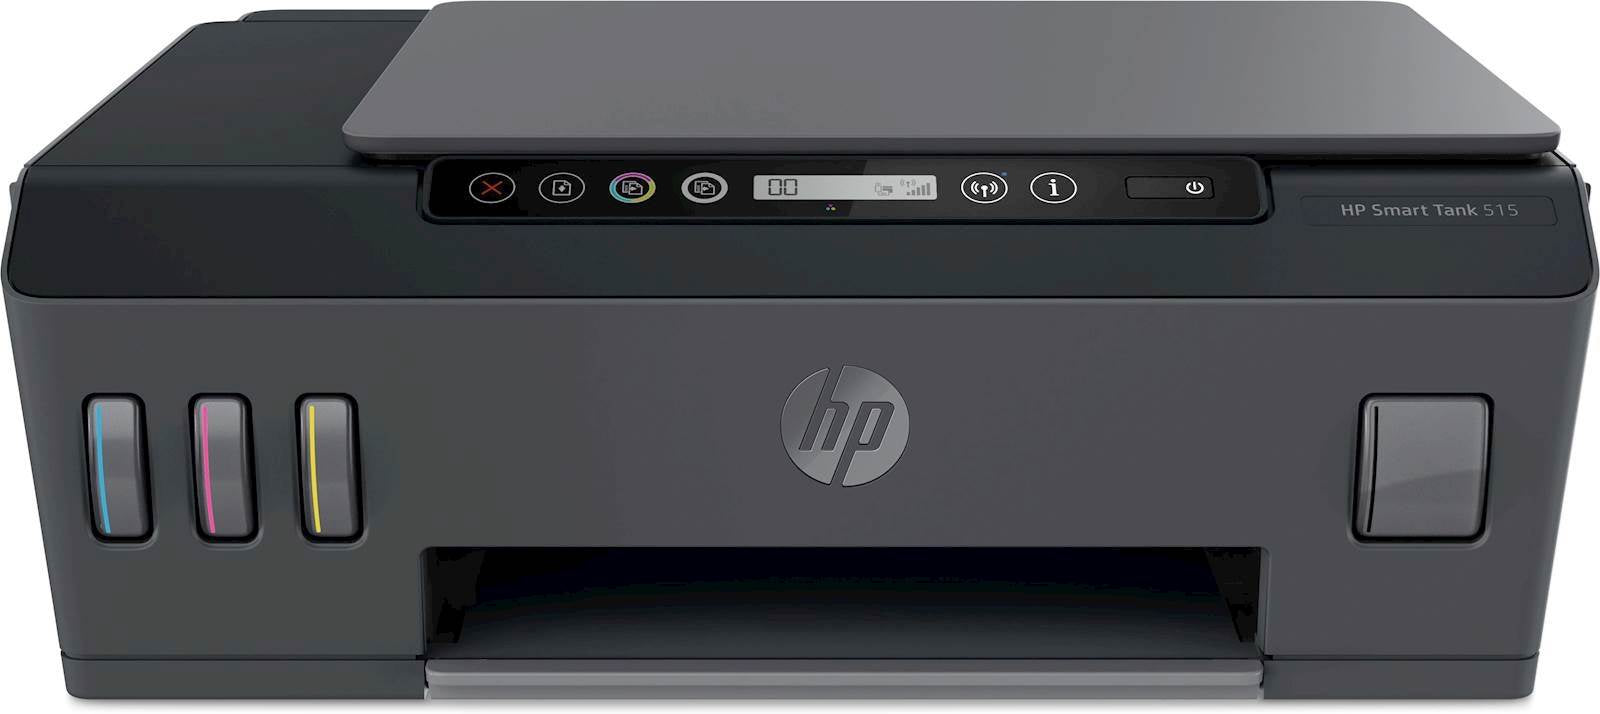 Printer MFP HP Smart Tank 515 InkJet Color WIFI